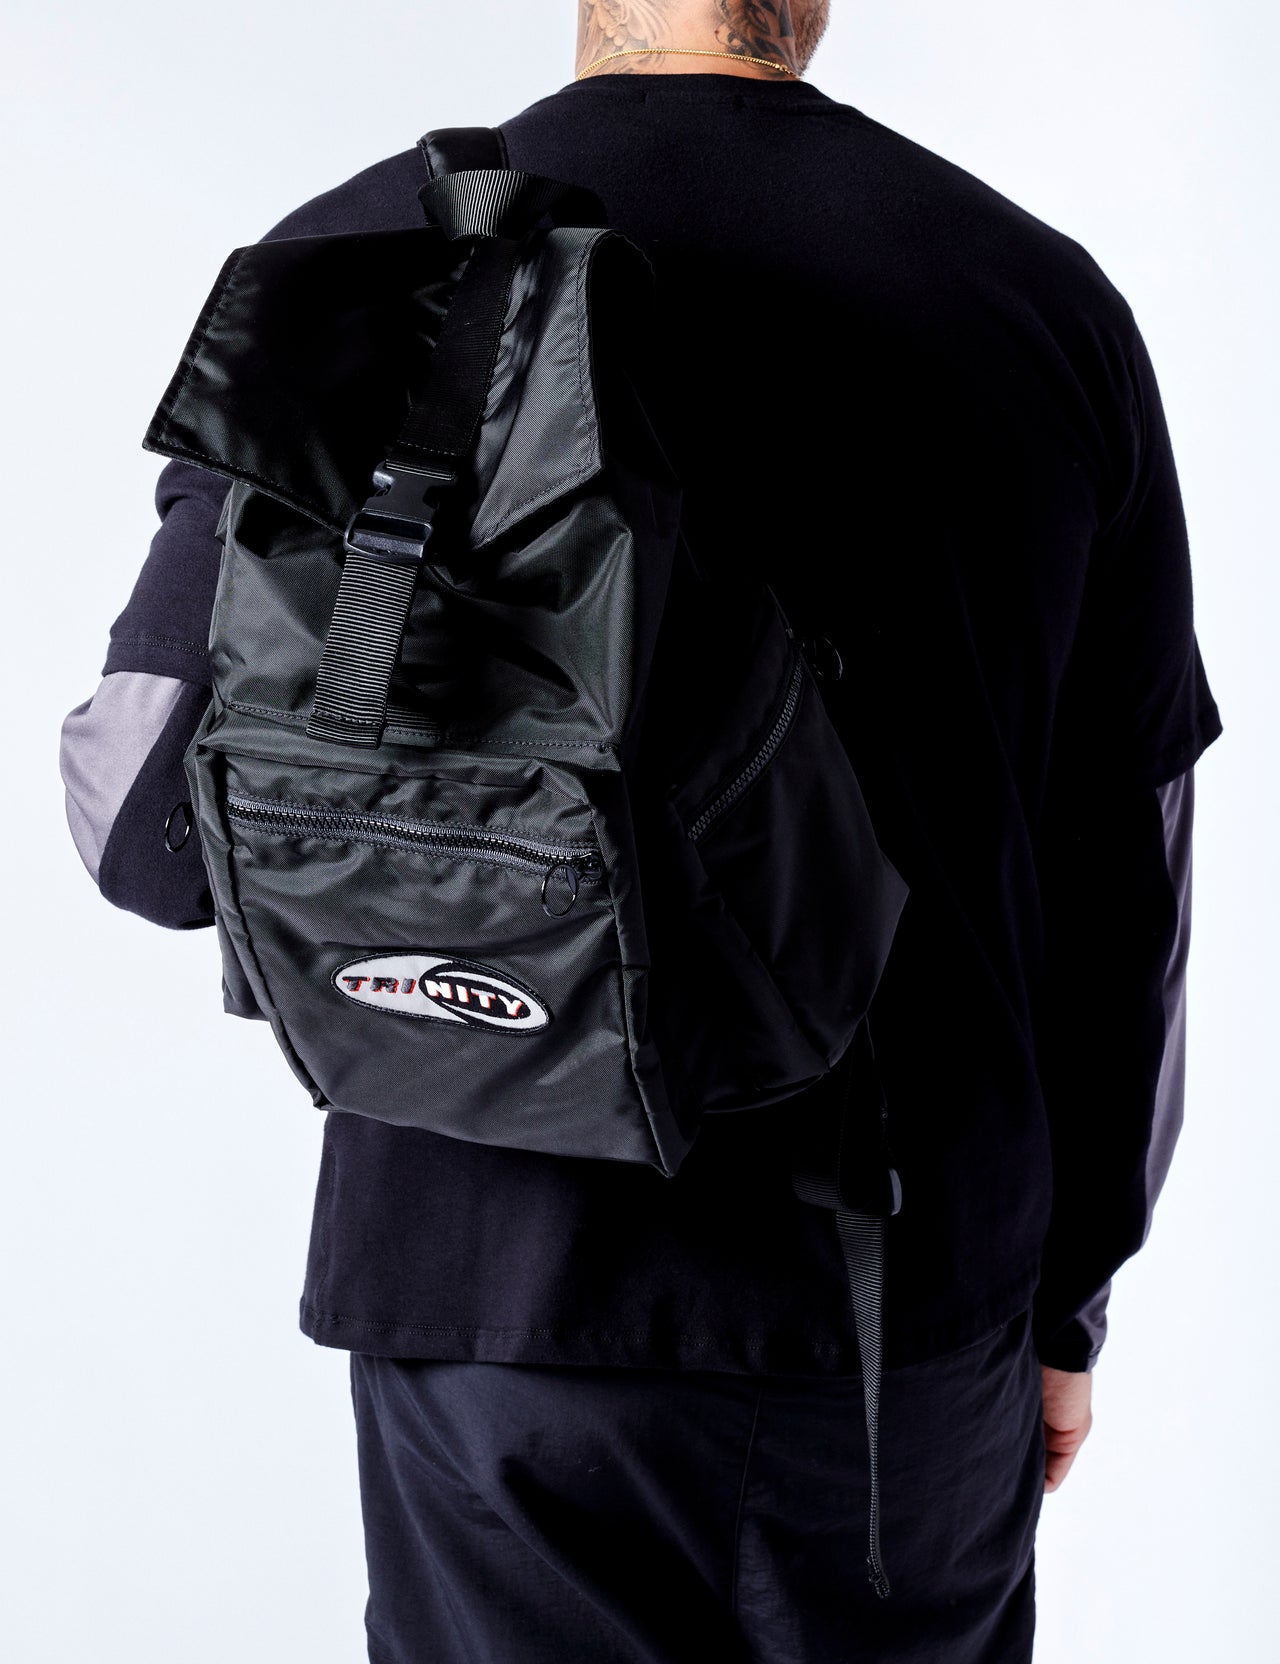 Backpack - Stealth Black